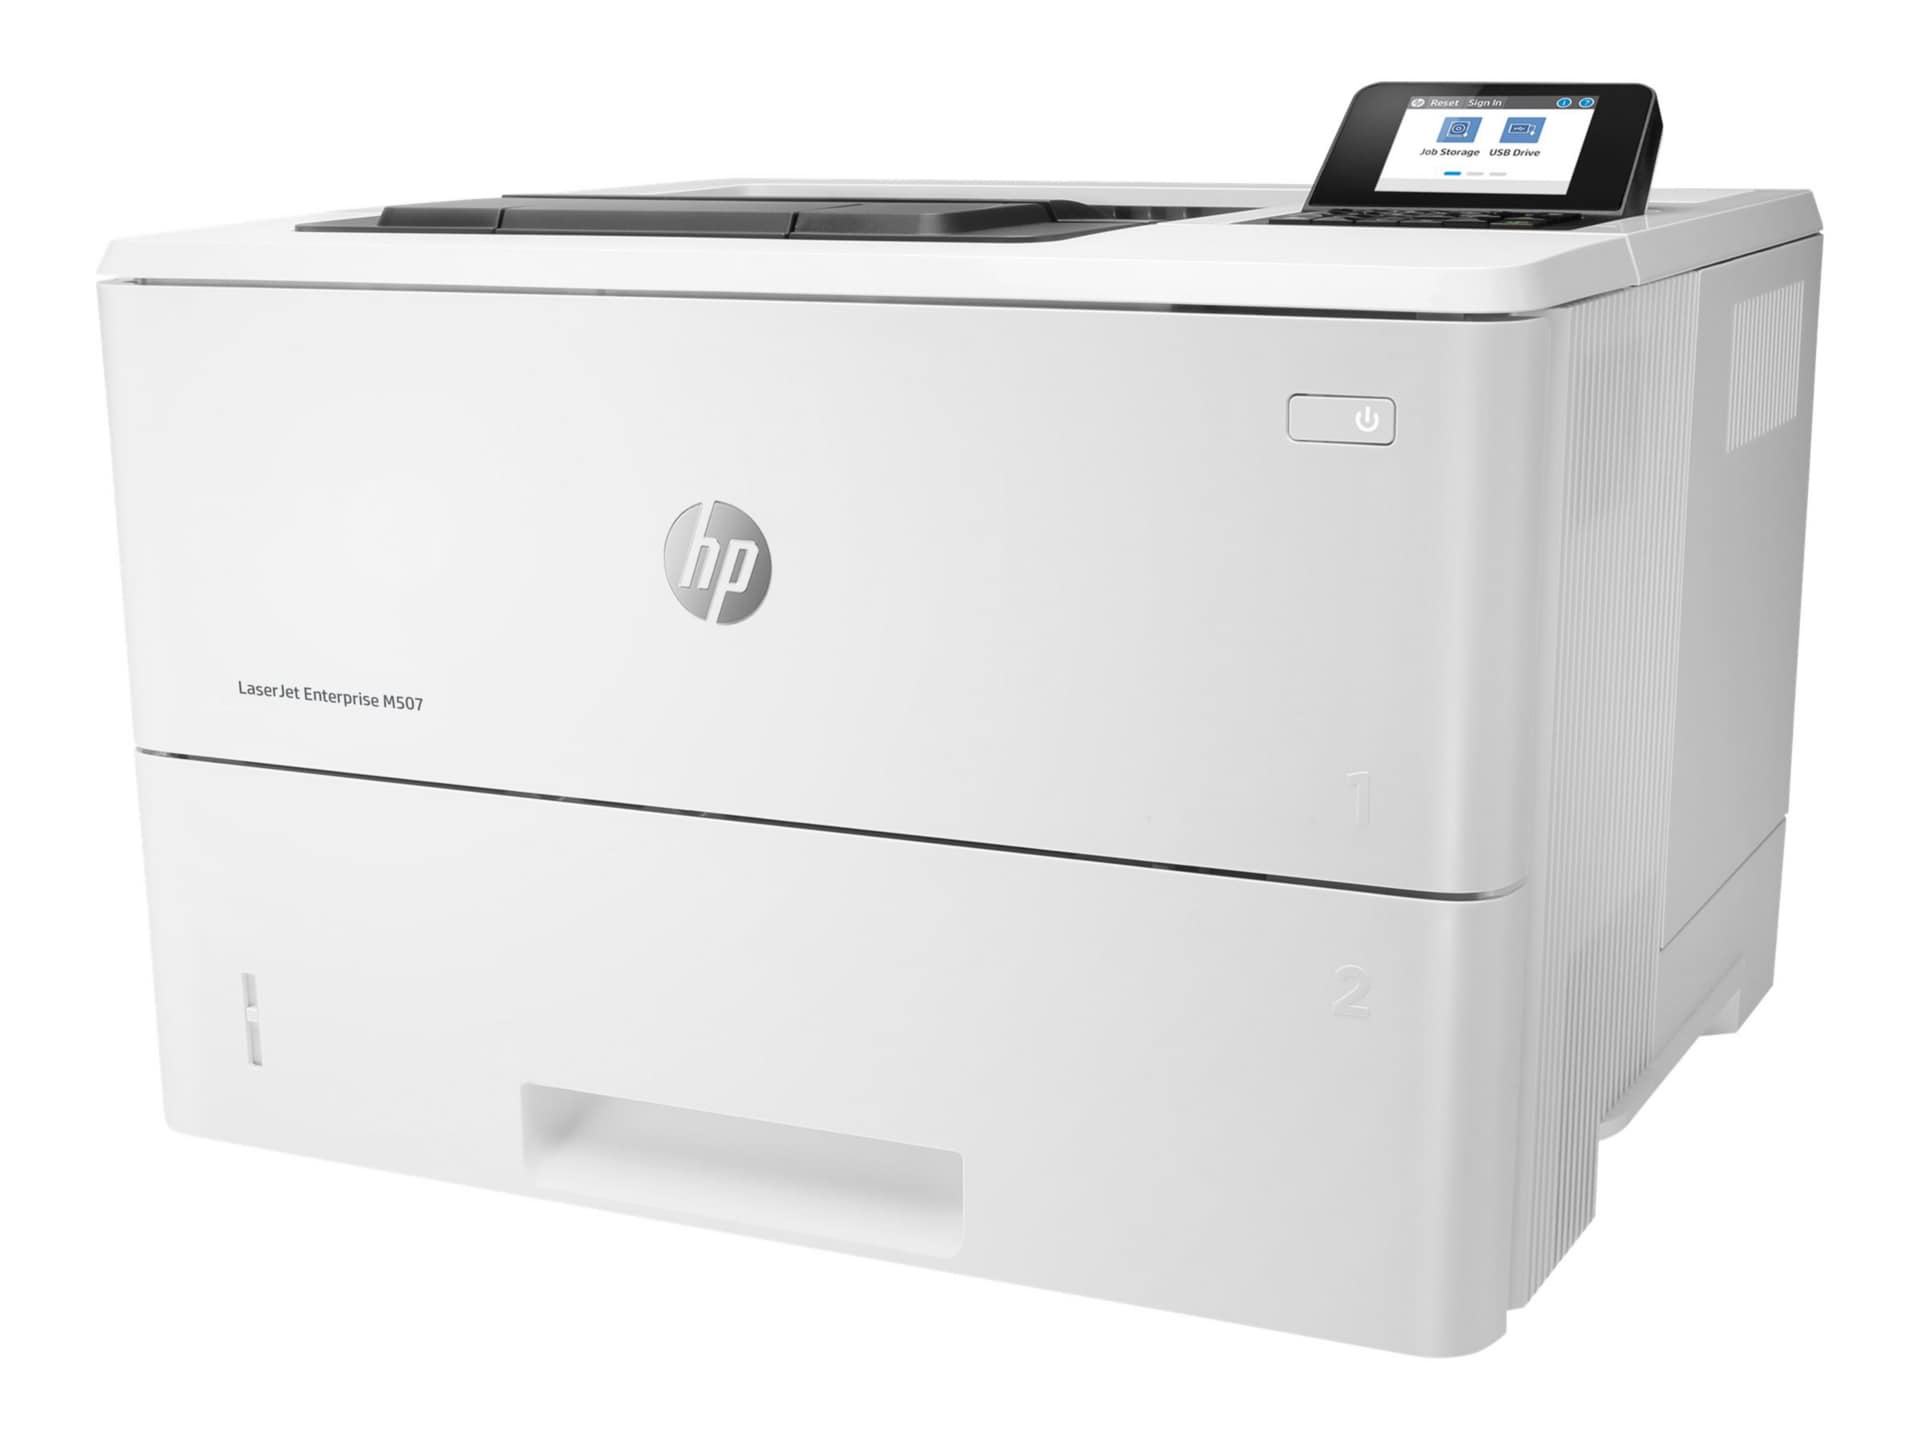 HP LaserJet Enterprise M507 M507n Desktop Laser Printer - Monochrome